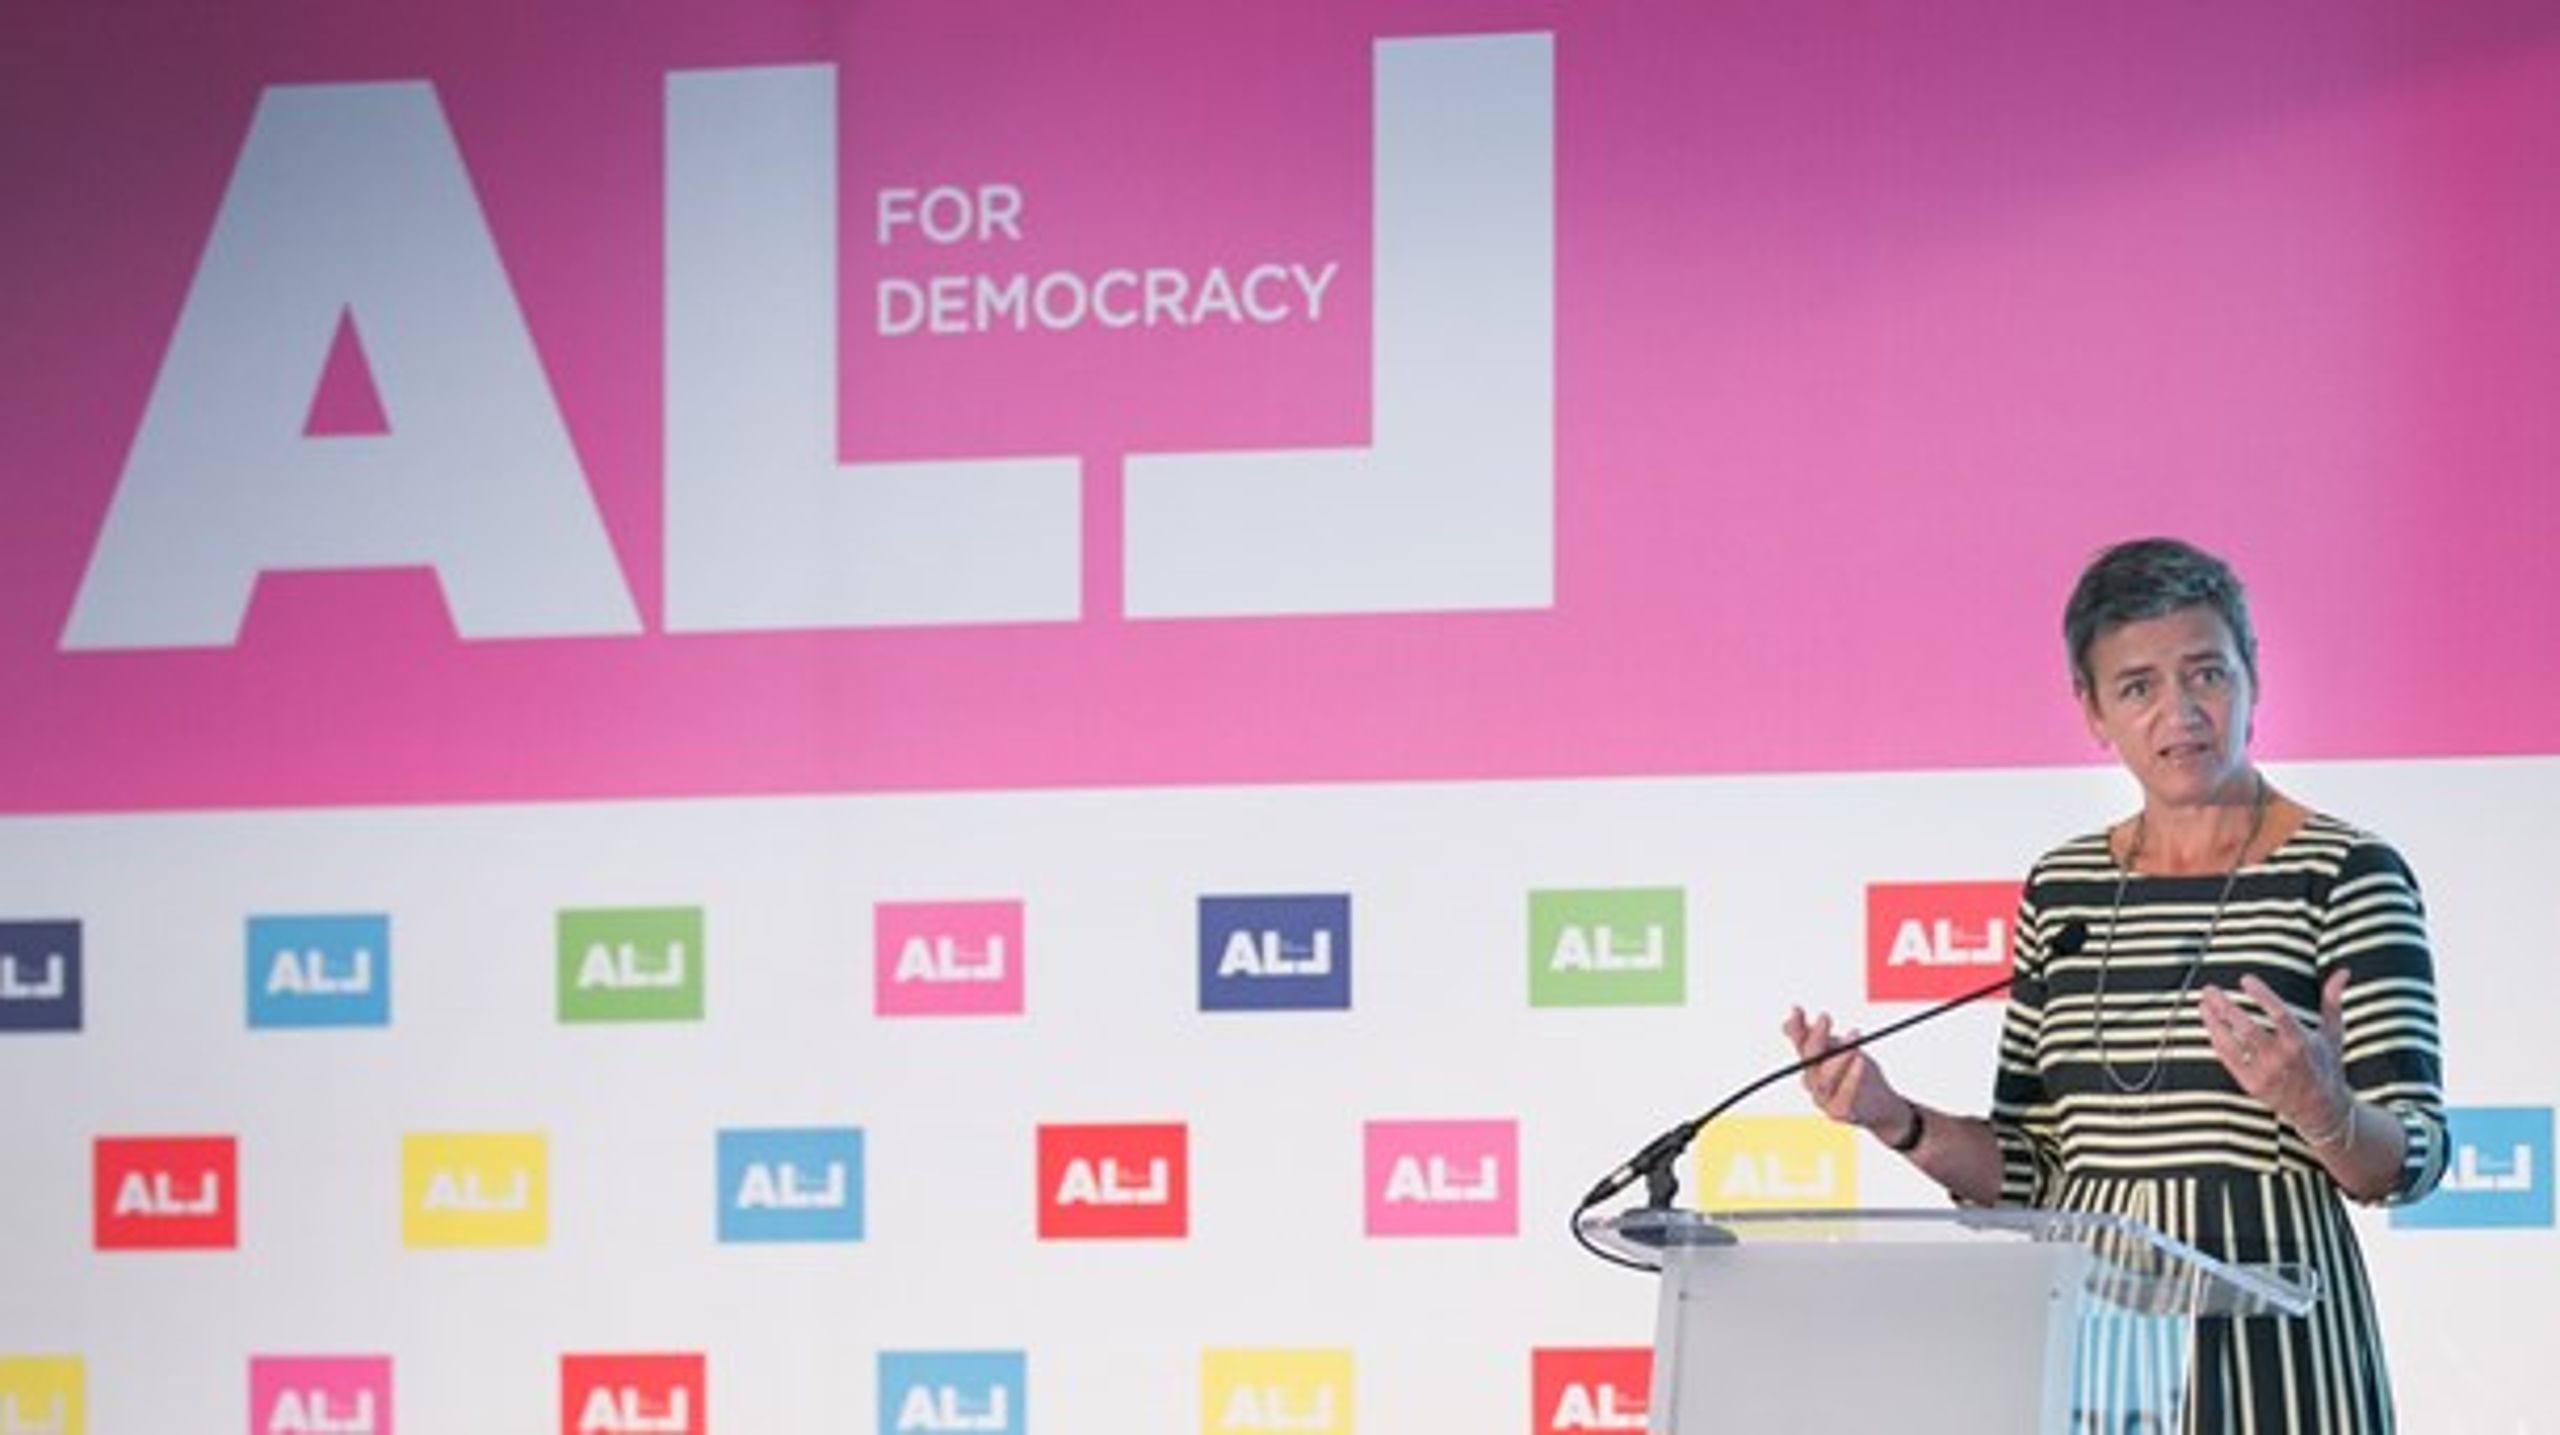 Danmarks EU-kommissær, Margrethe Vestager, leverede åbningstalen for den nye demokratialliance ALL for Democracy.